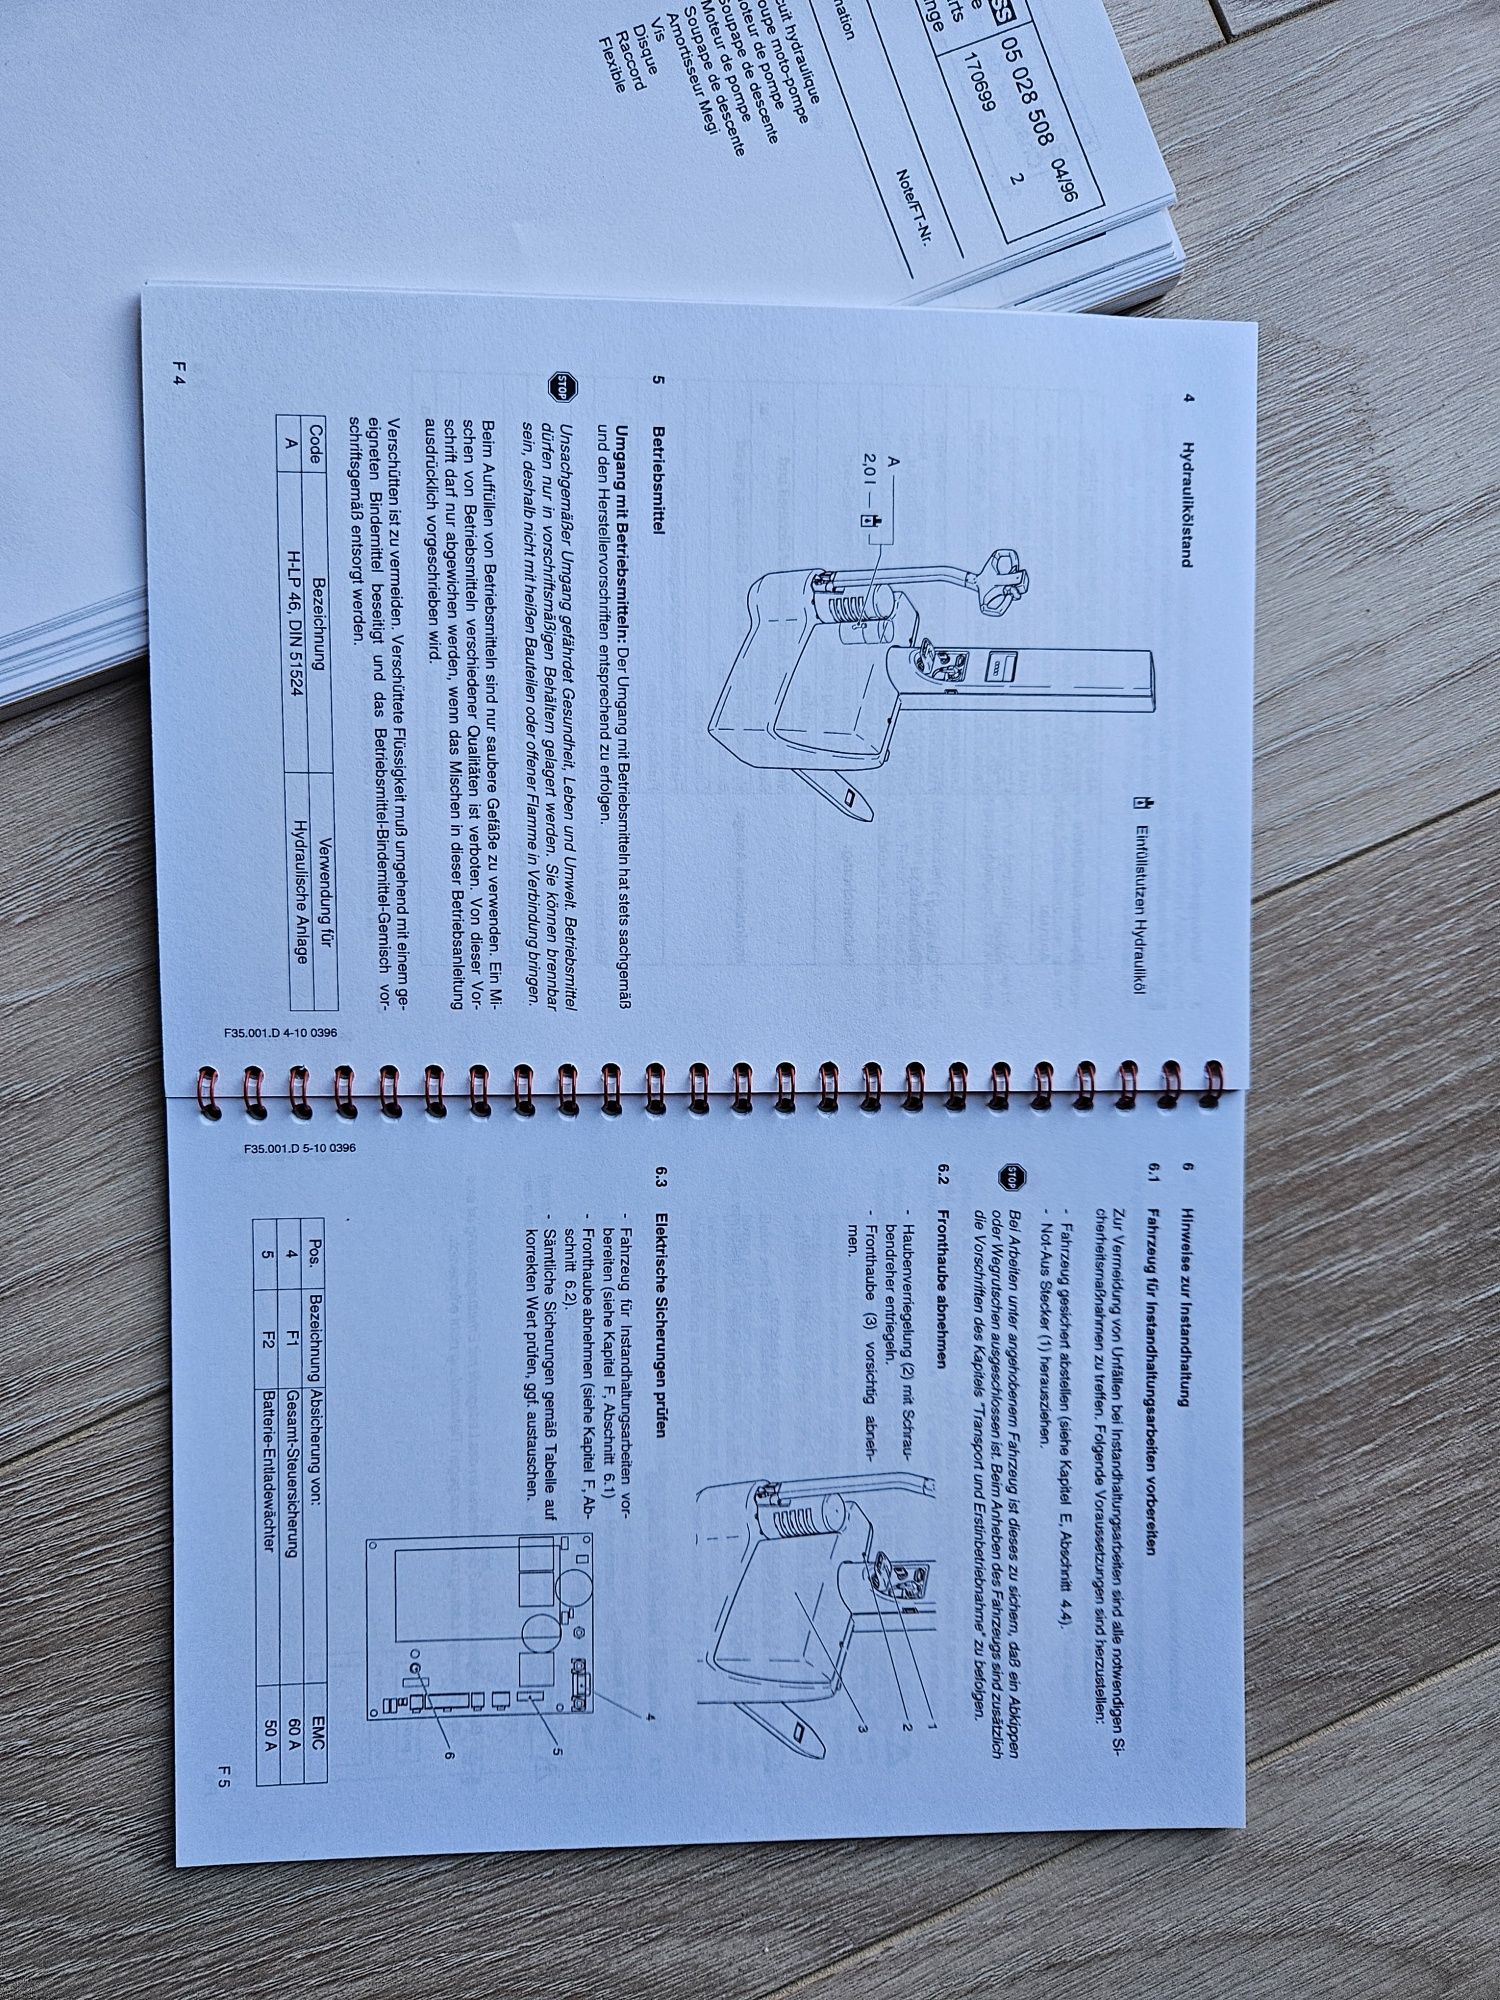 Steinbock boss EMC / EMB książki - instrukcja obsługi i lista części